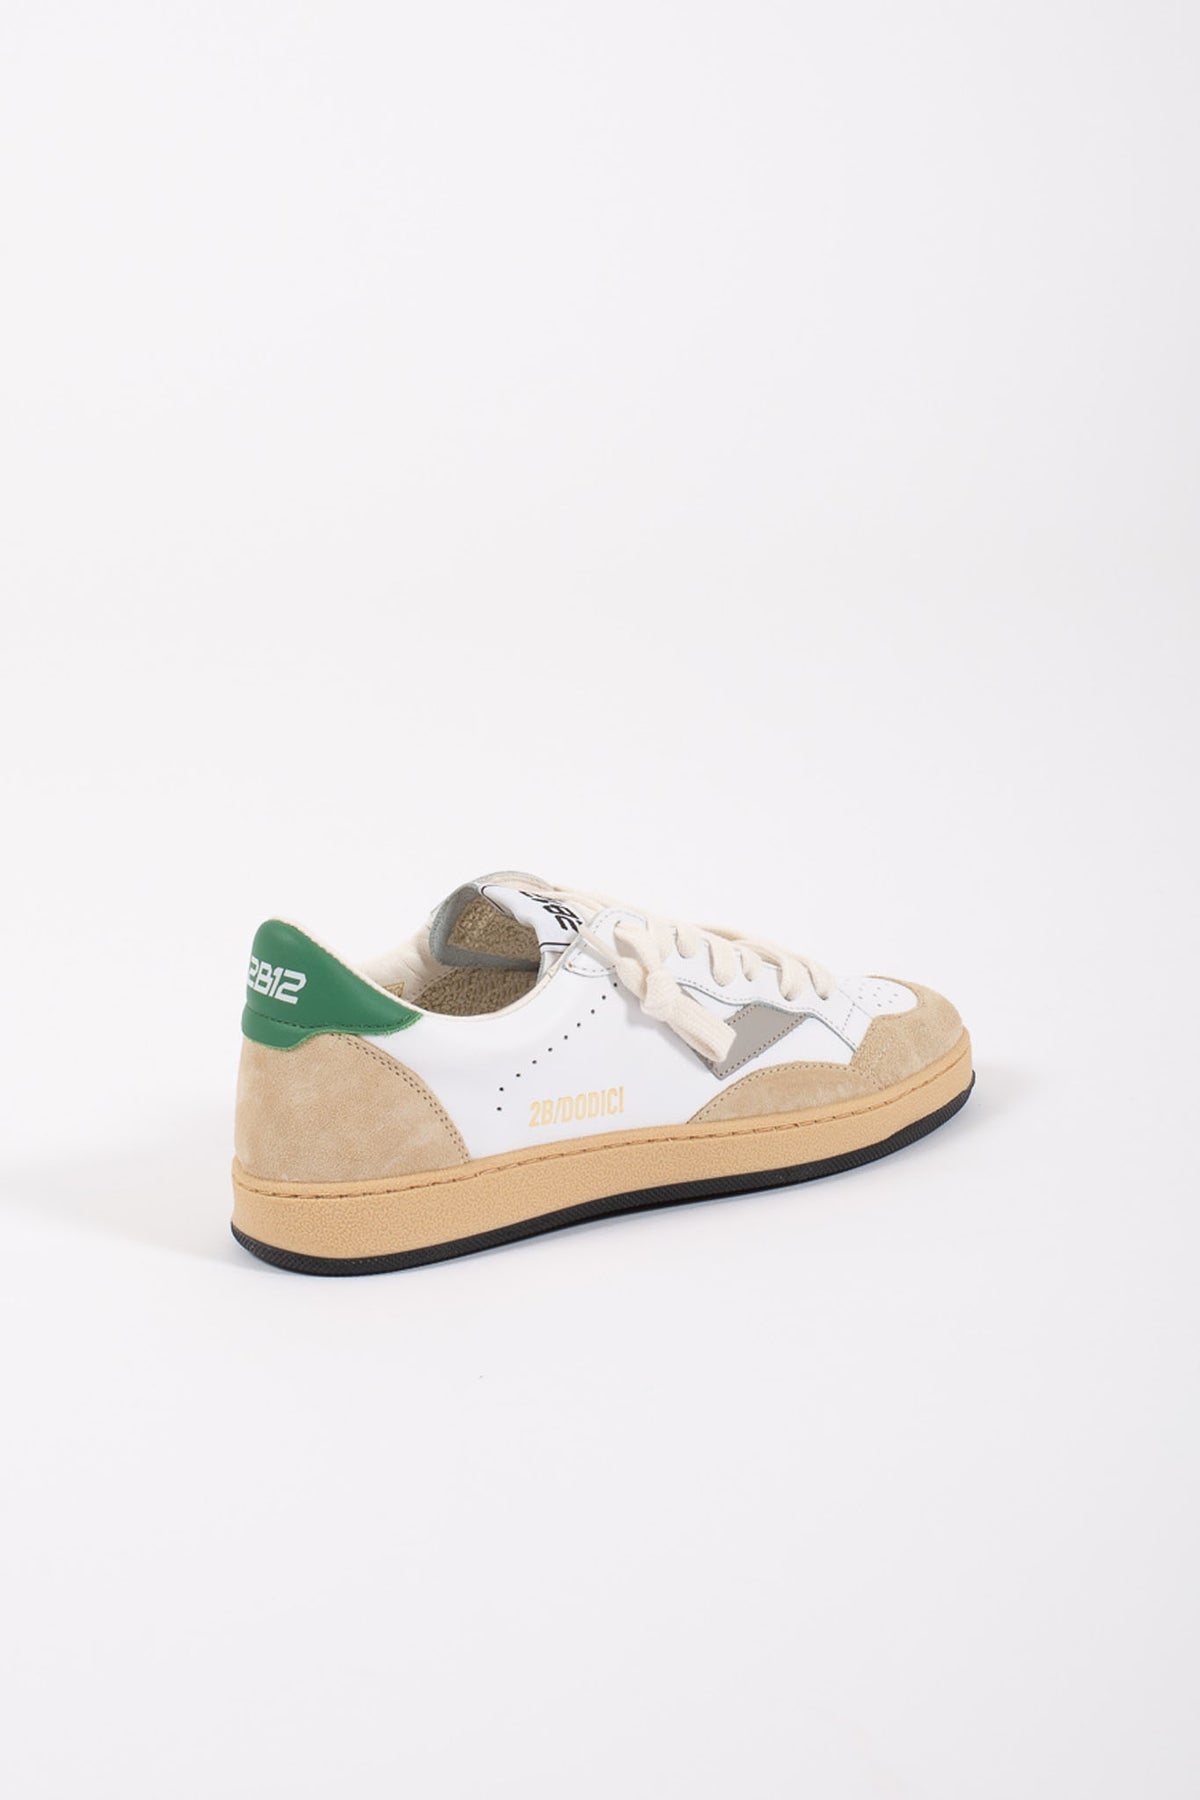 2b12 Sneakers Laccio Retro Verde Bianco Bambino - 3